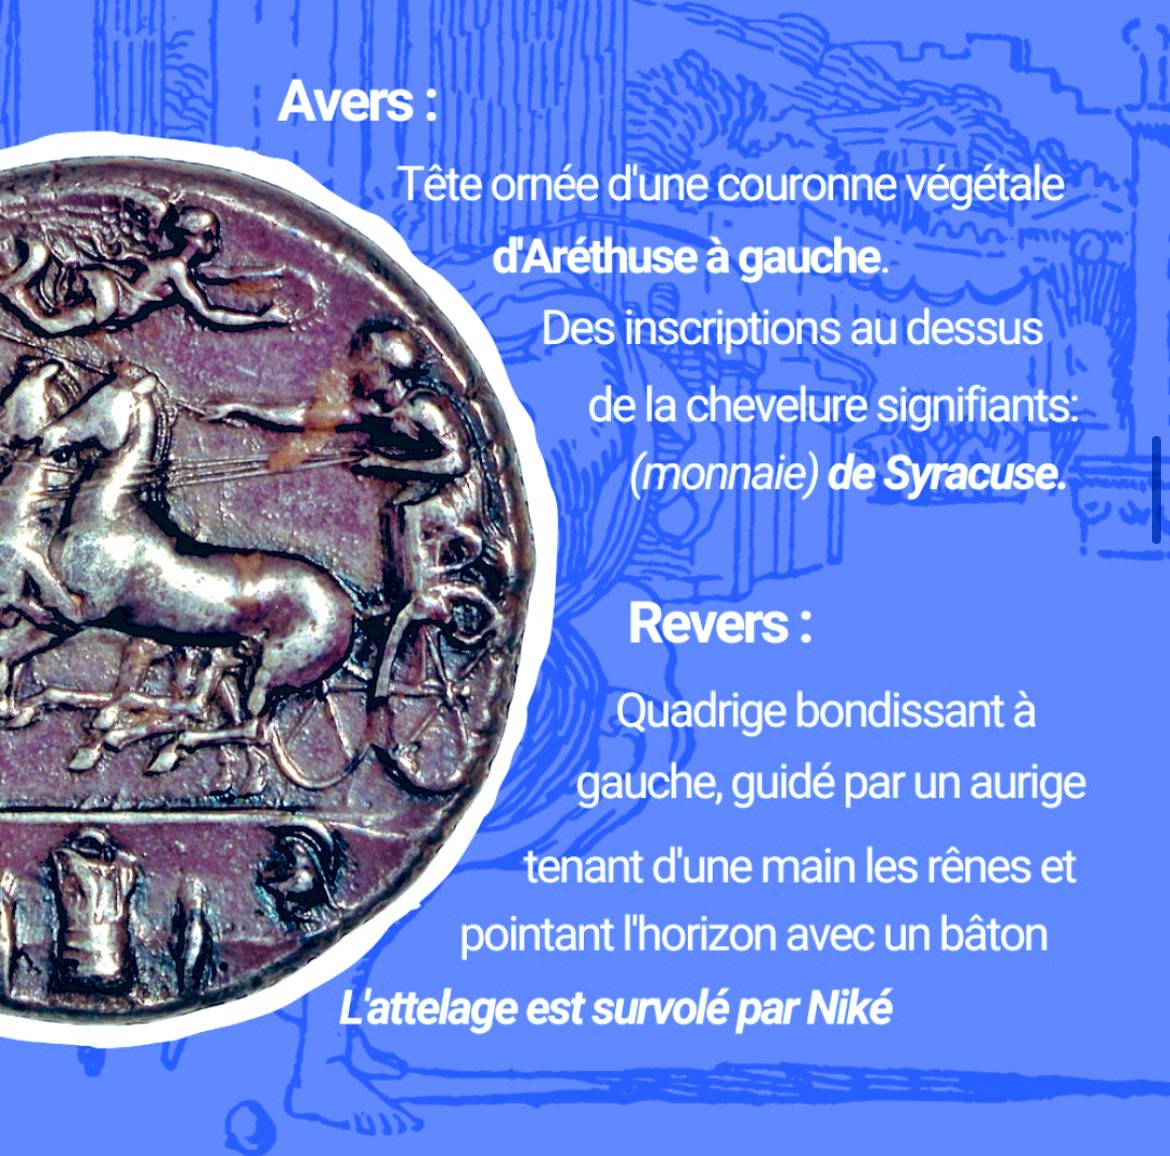 « Ciltius, altius, fortius »

#banquedefrance #monnaie #paris2024 #JOP #france #sport #Patrimoine #histoire #Jeuxolympiques